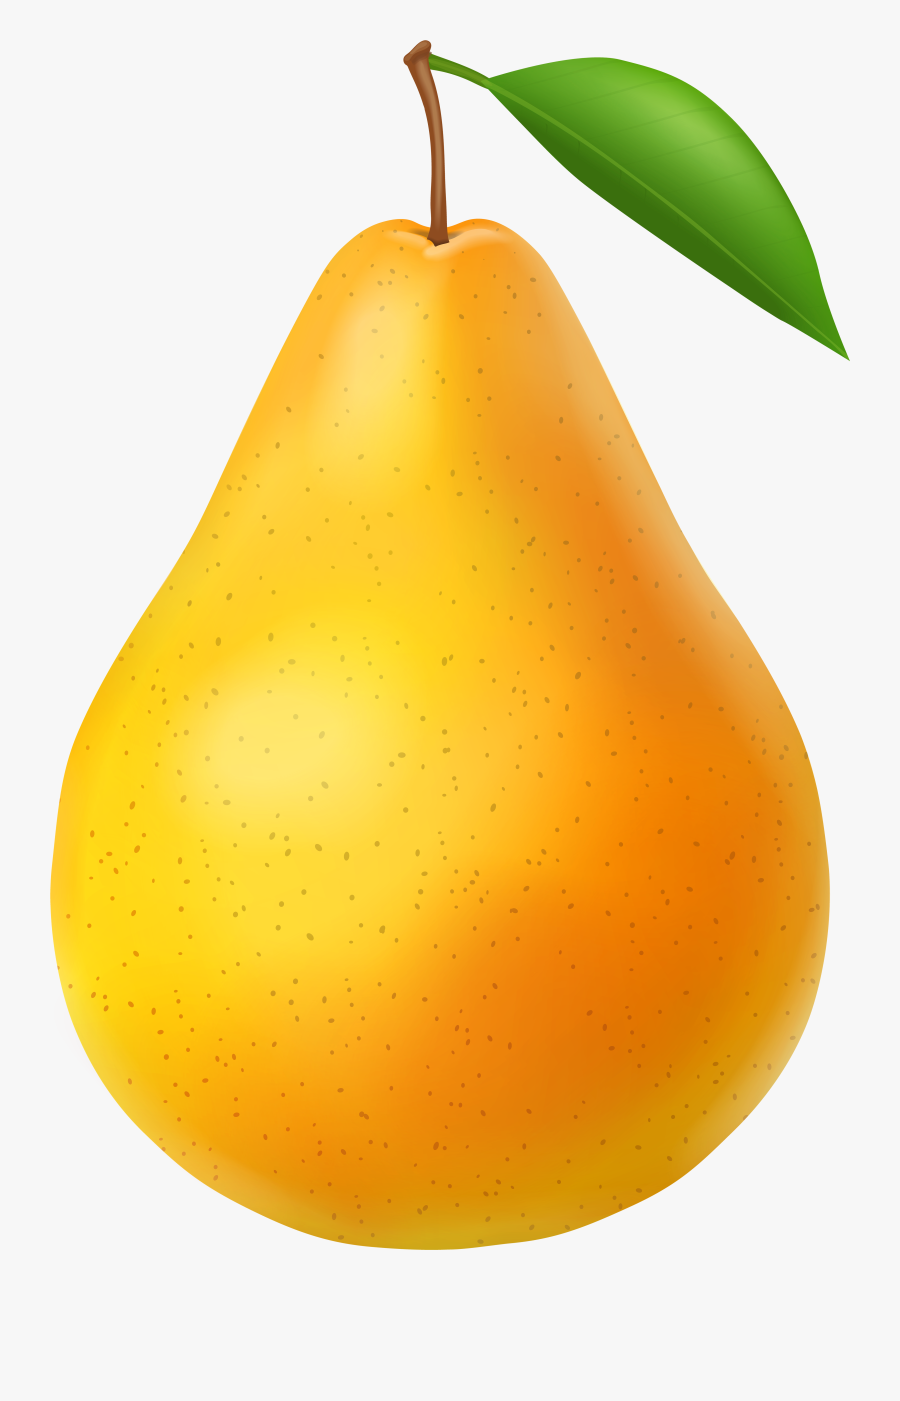 Pear Clip Art - Transparent Background Pear Clipart, Transparent Clipart